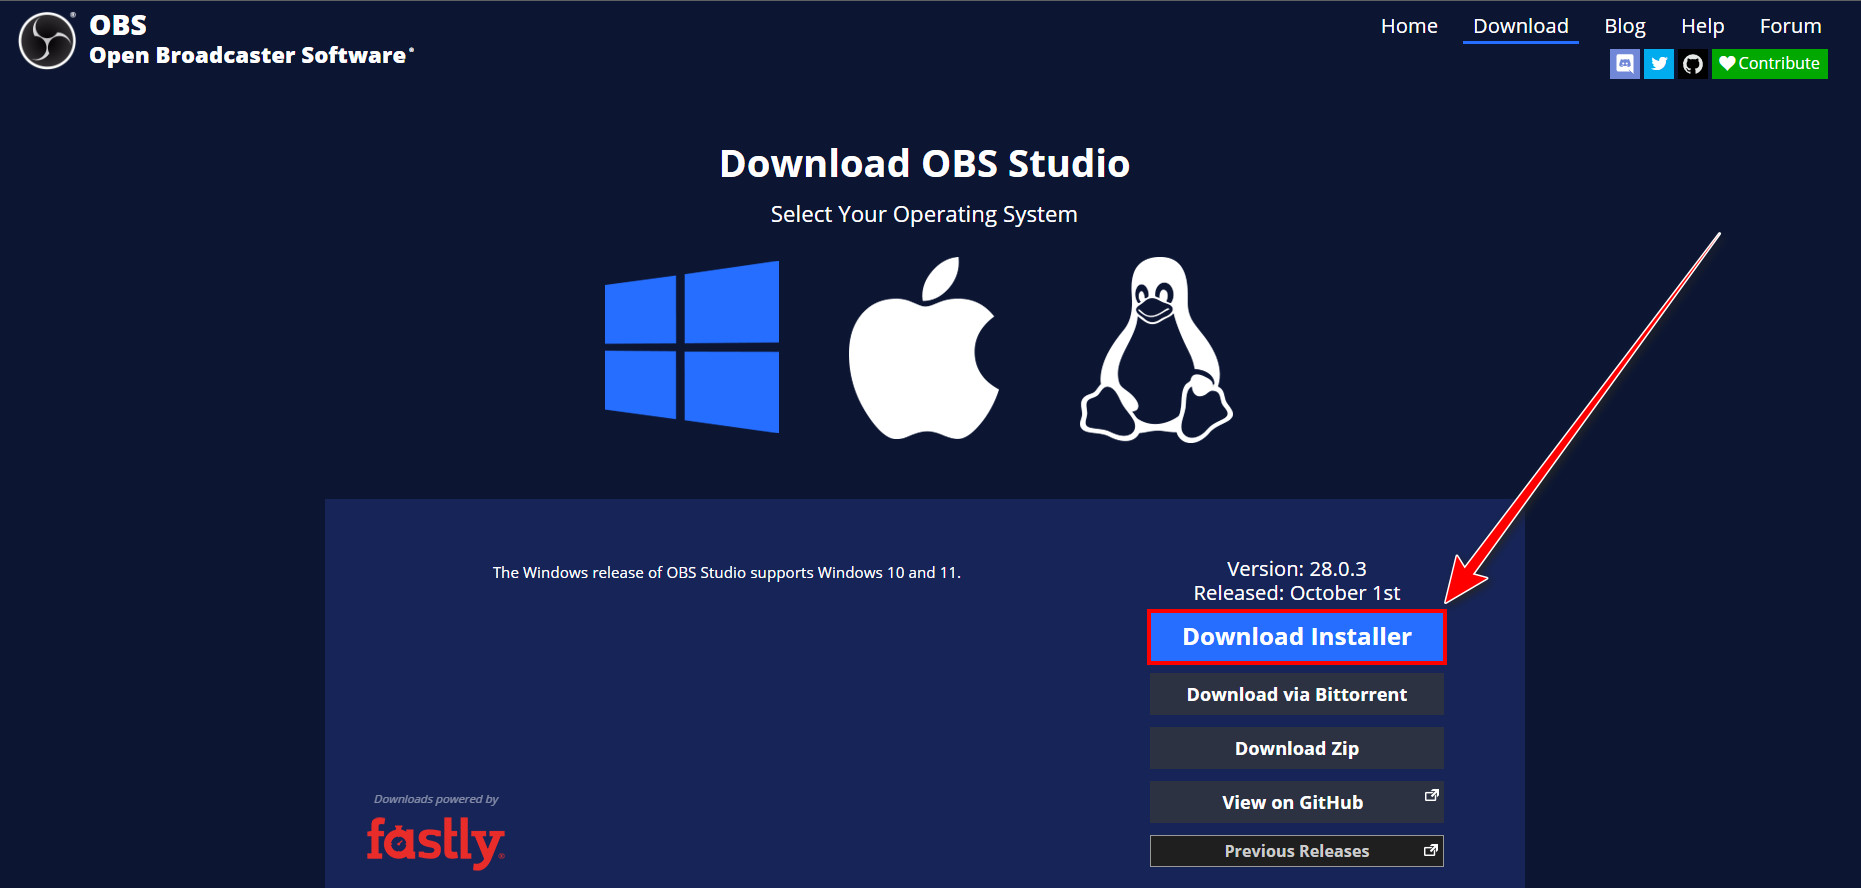 obs-download-installer